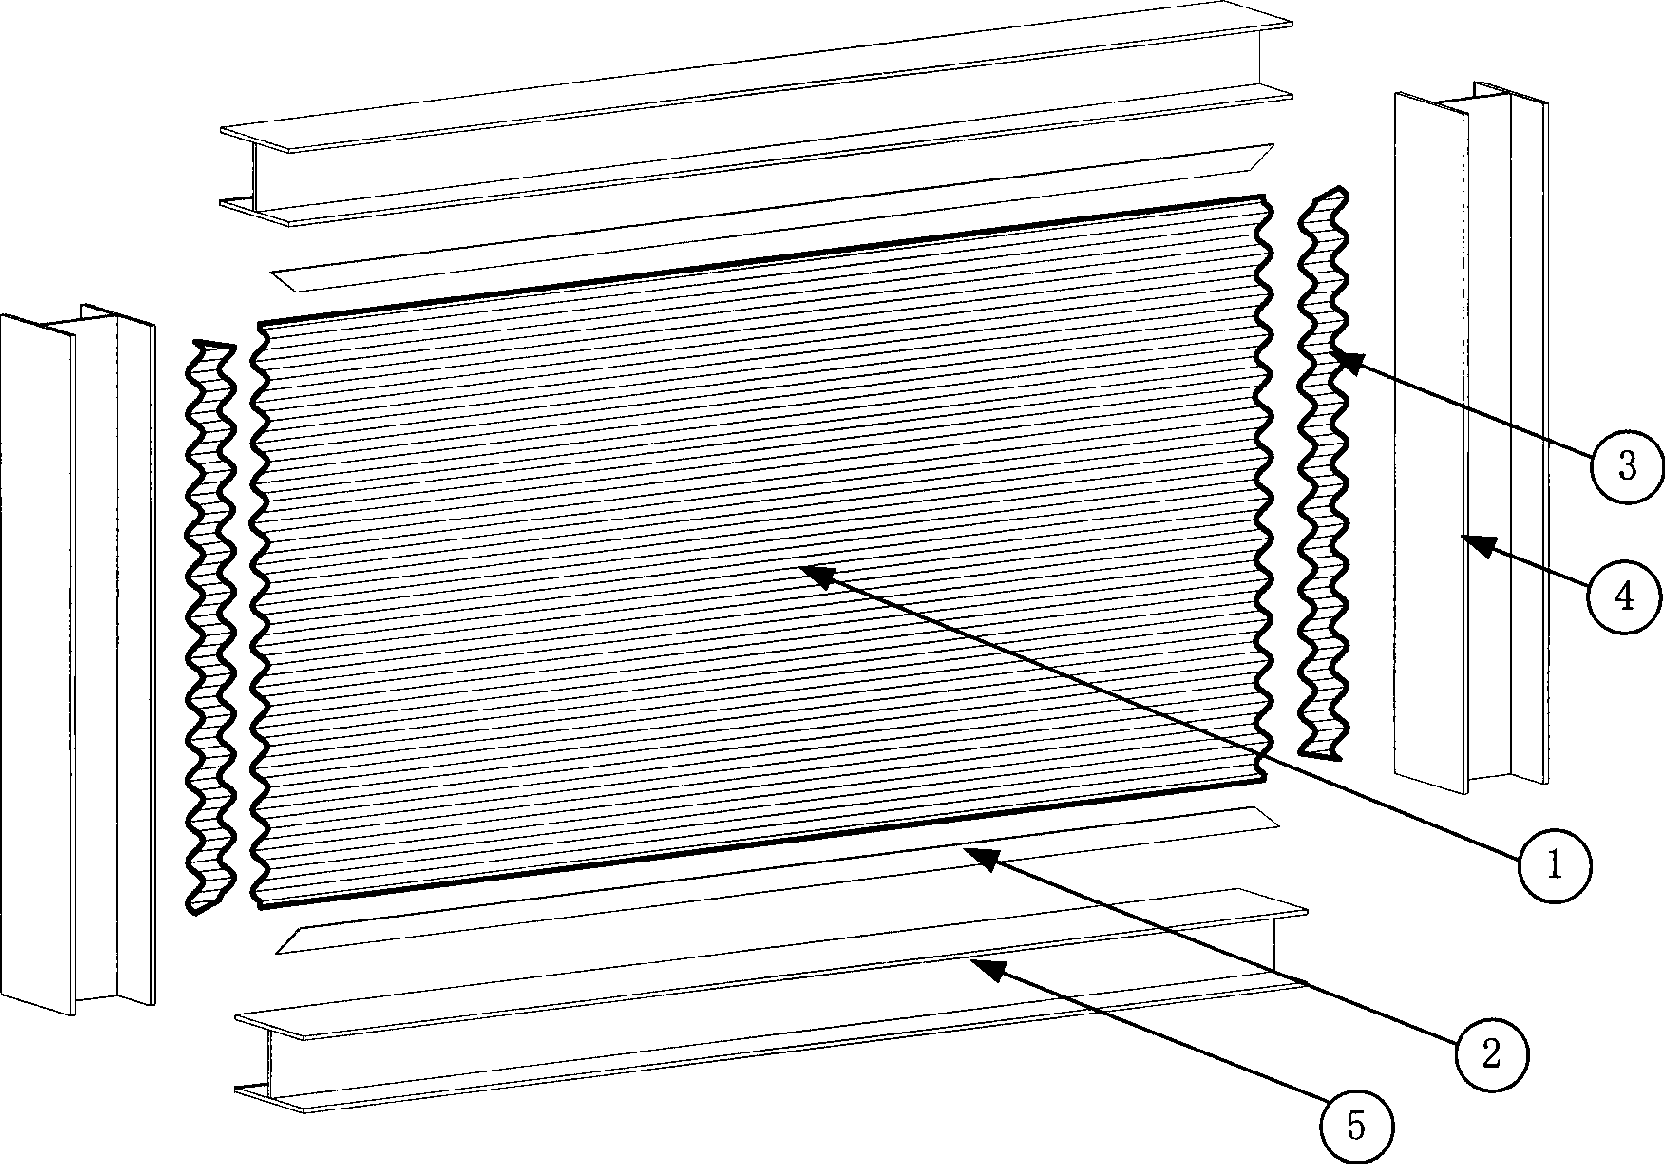 Wavy steel plate shear wall